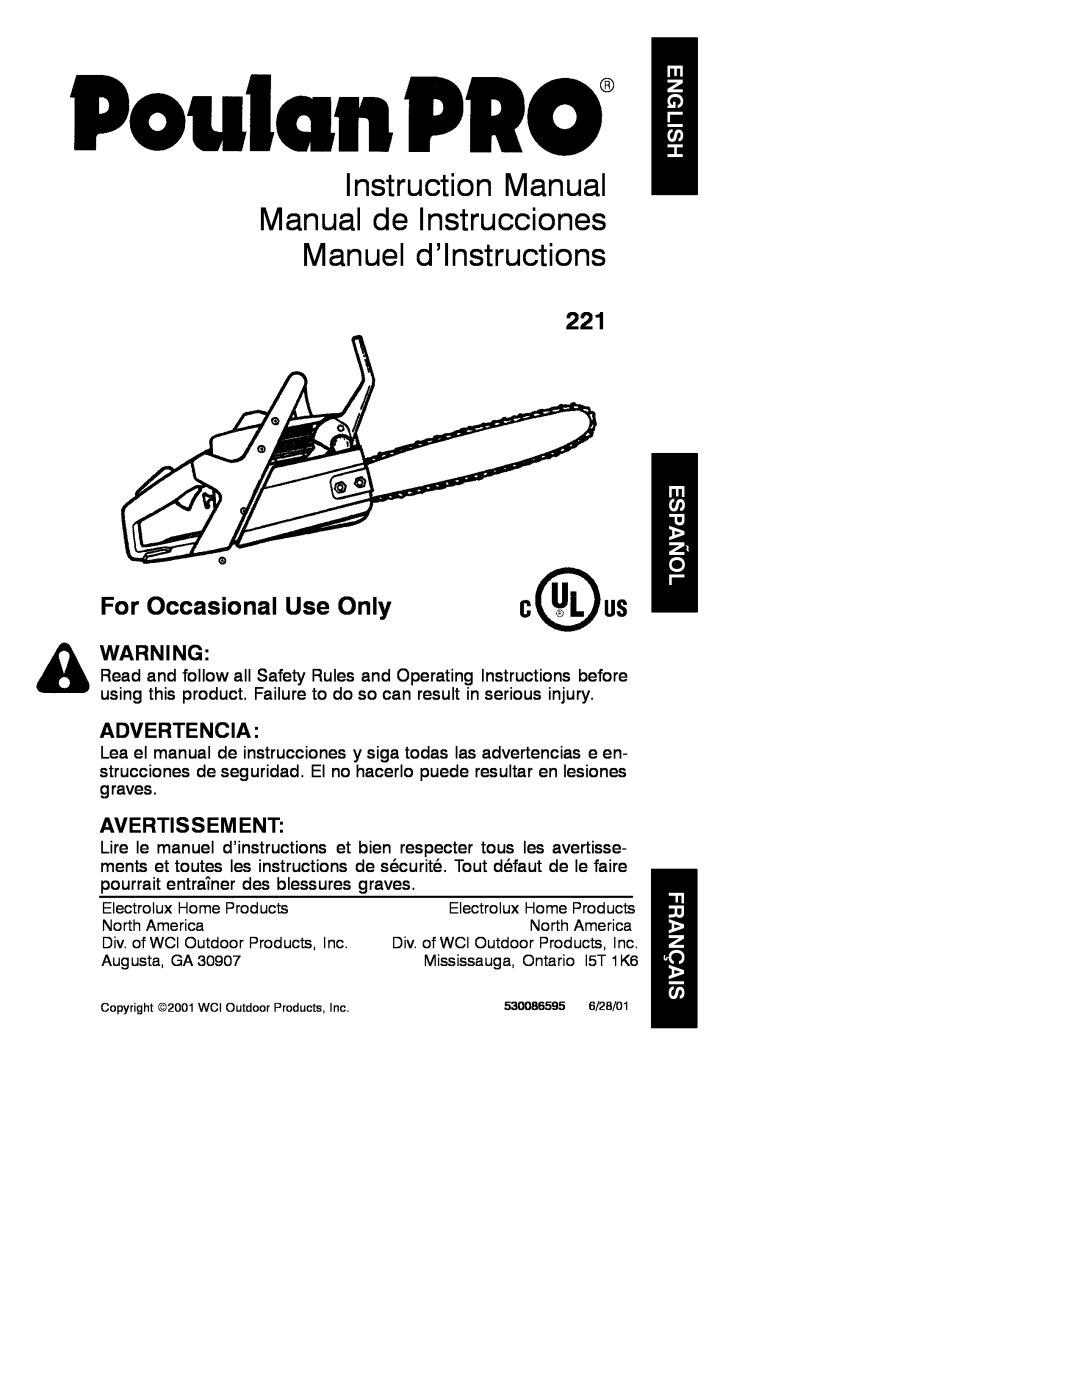 Poulan 530086595 instruction manual Instruction Manual Manual de Instrucciones Manuel d’Instructions, Advertencia 